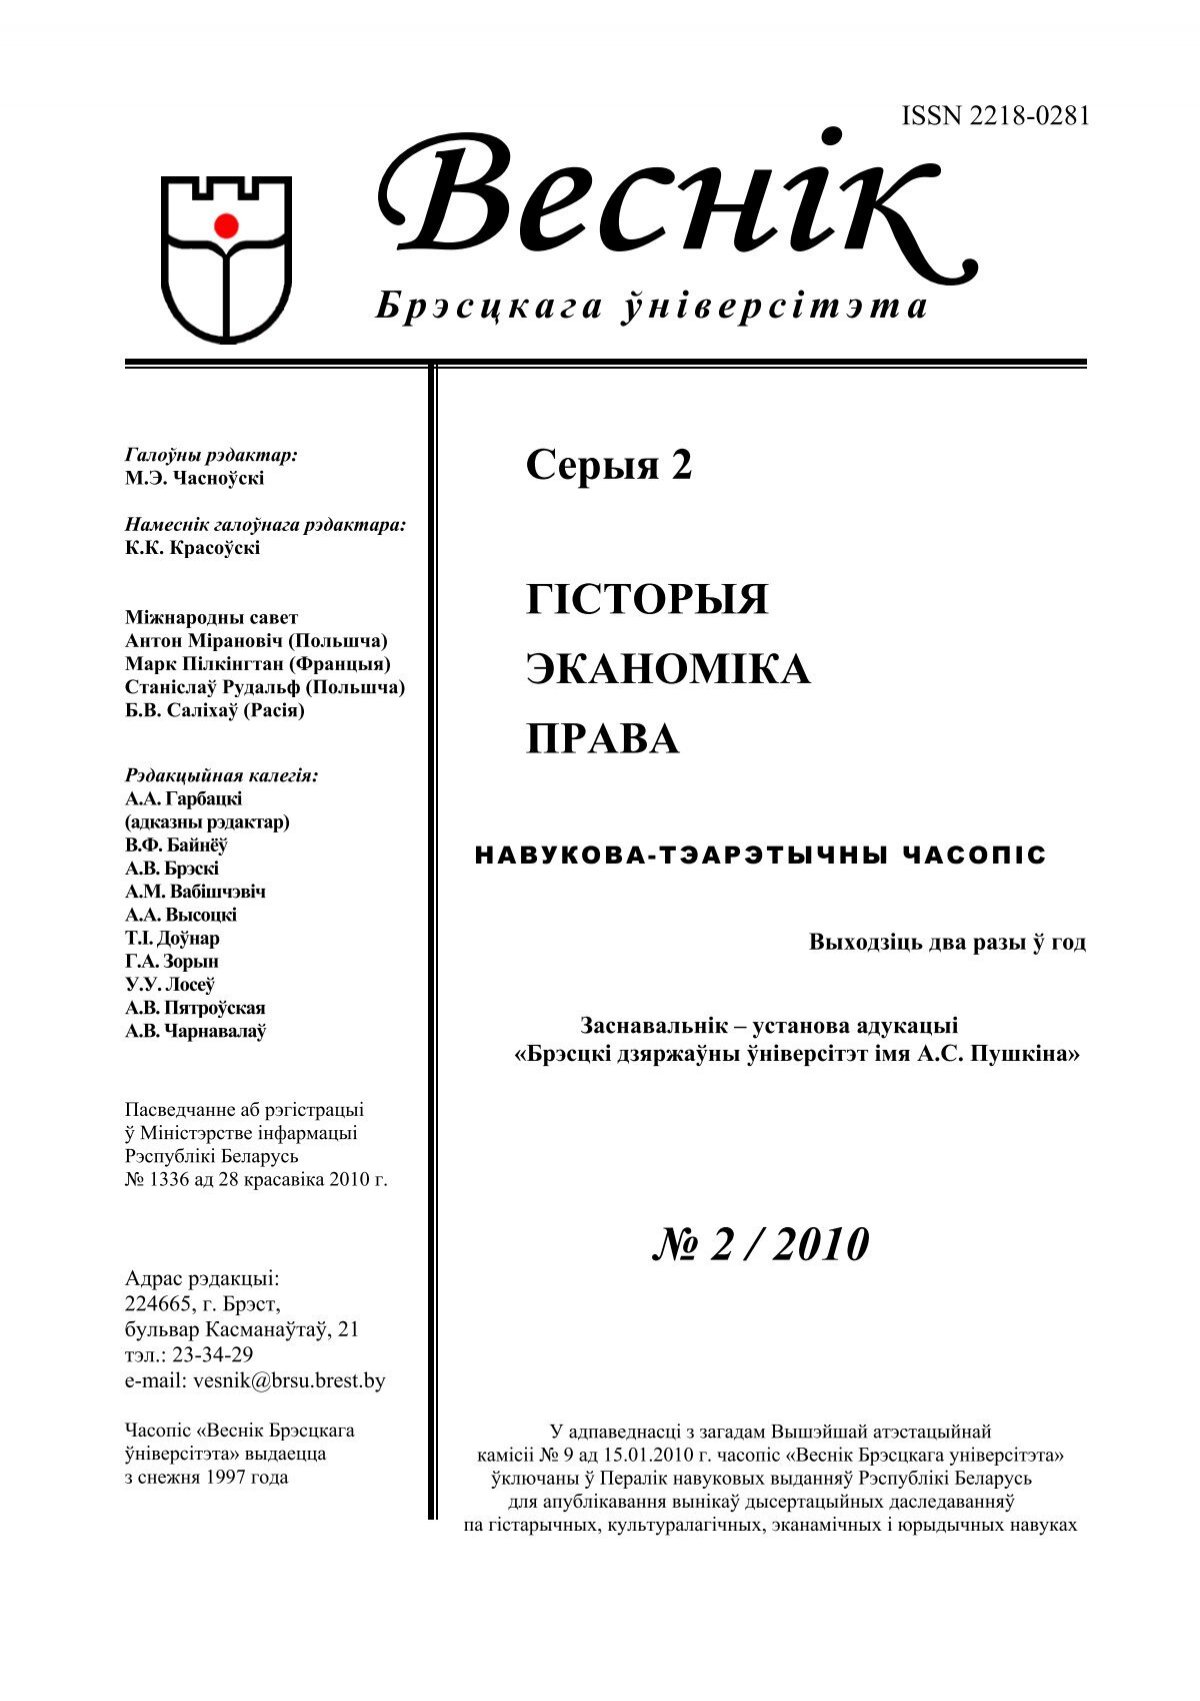  Отчет по практике по теме Организации работы индивидуального предпринимателя 'Шуриновой А.А.'